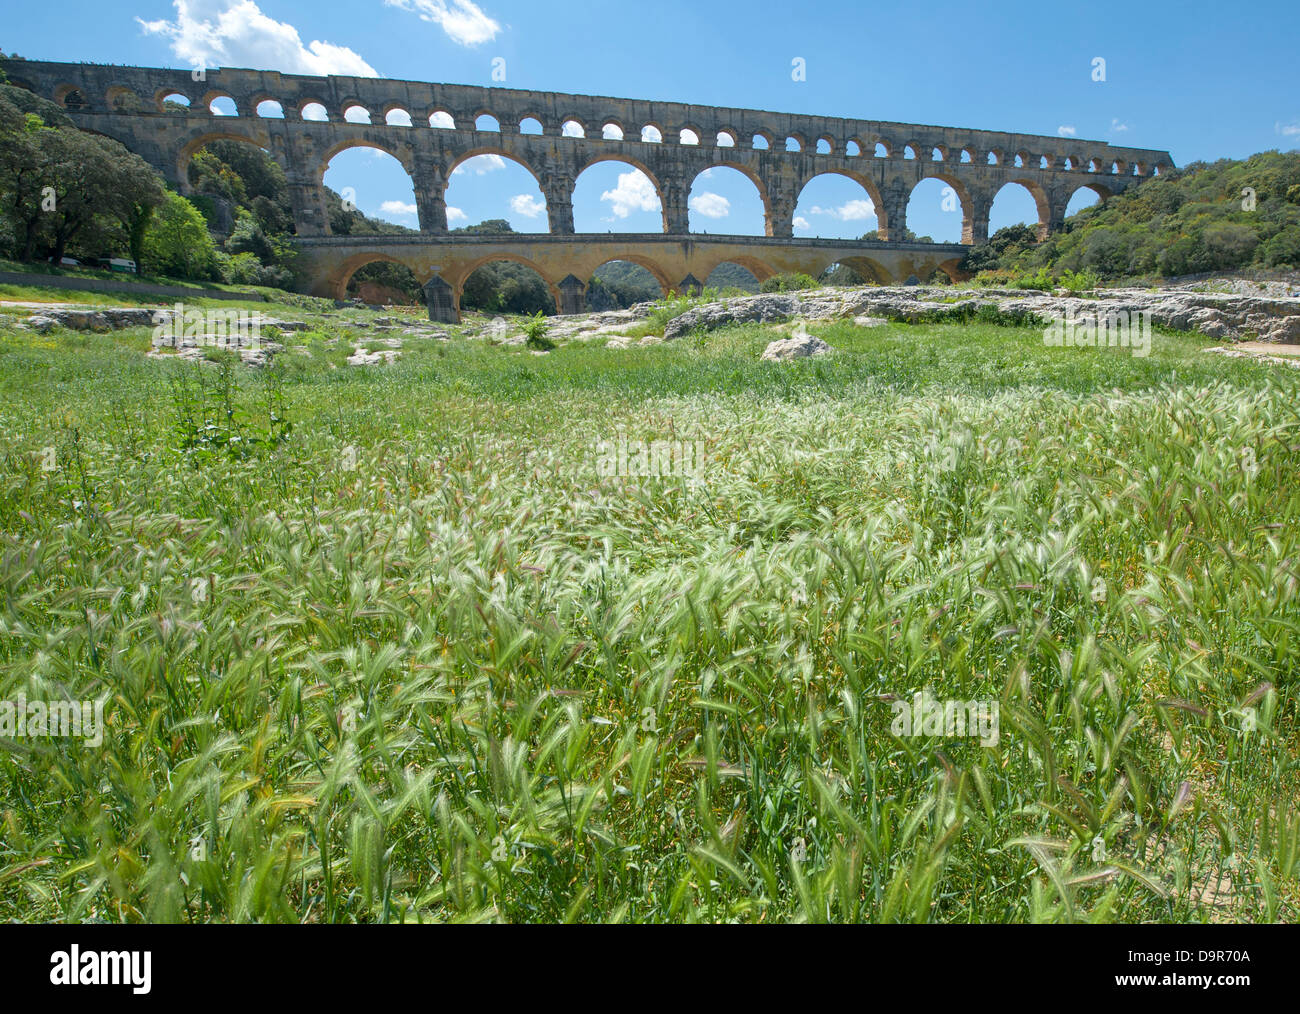 UNESCO-Welterbe der Pont du Gard, ein römisches Aquädukt in der Nähe von Nîmes im Departement Gard, gesehen von den Ufern des Flusses Gardon. Stockfoto